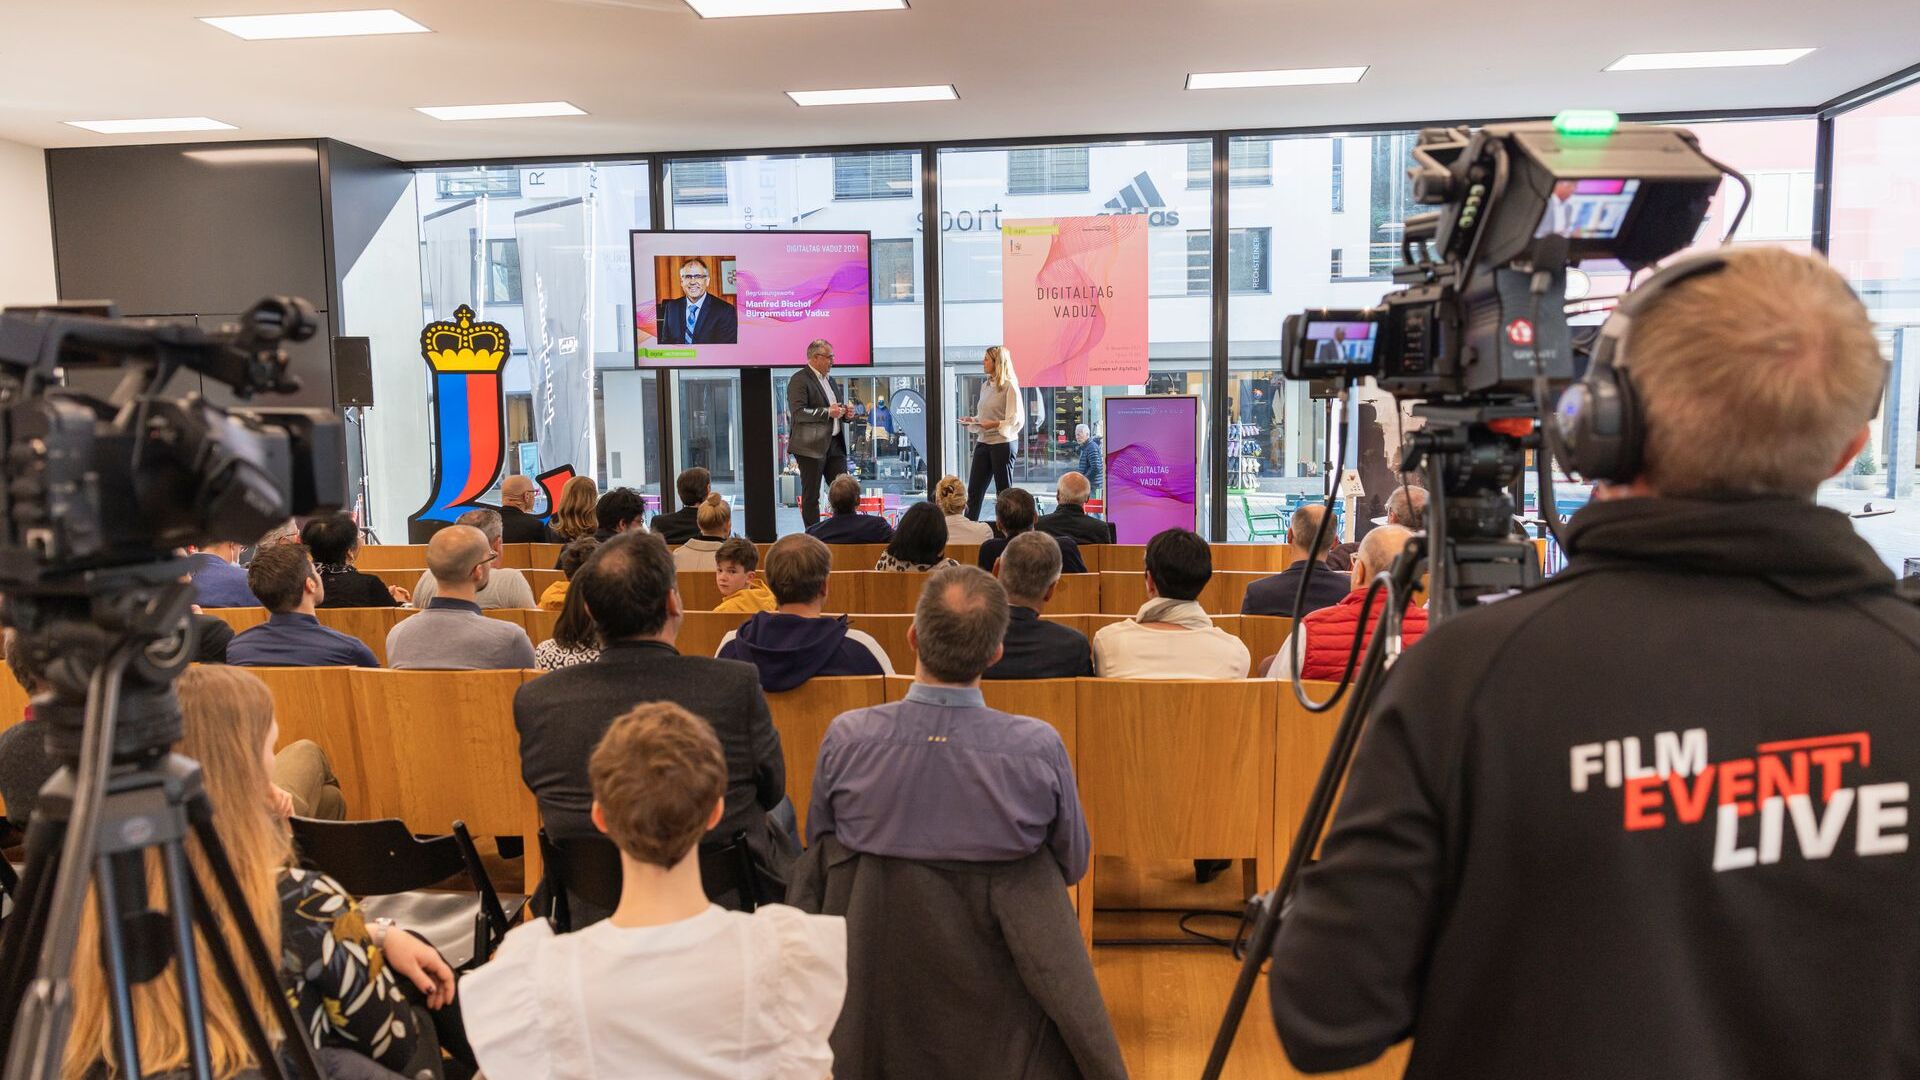 Le "Digitaltag Vaduz", accueilli par le Kunstmuseum de la capitale de la Principauté de Liechtenstein le samedi 6 novembre 2021, a suscité l'enthousiasme du public et des intervenants en analogie avec le "Swiss Digital Day" du lendemain 10 : l'intervention de le maire de la capitale Manfred Bischof